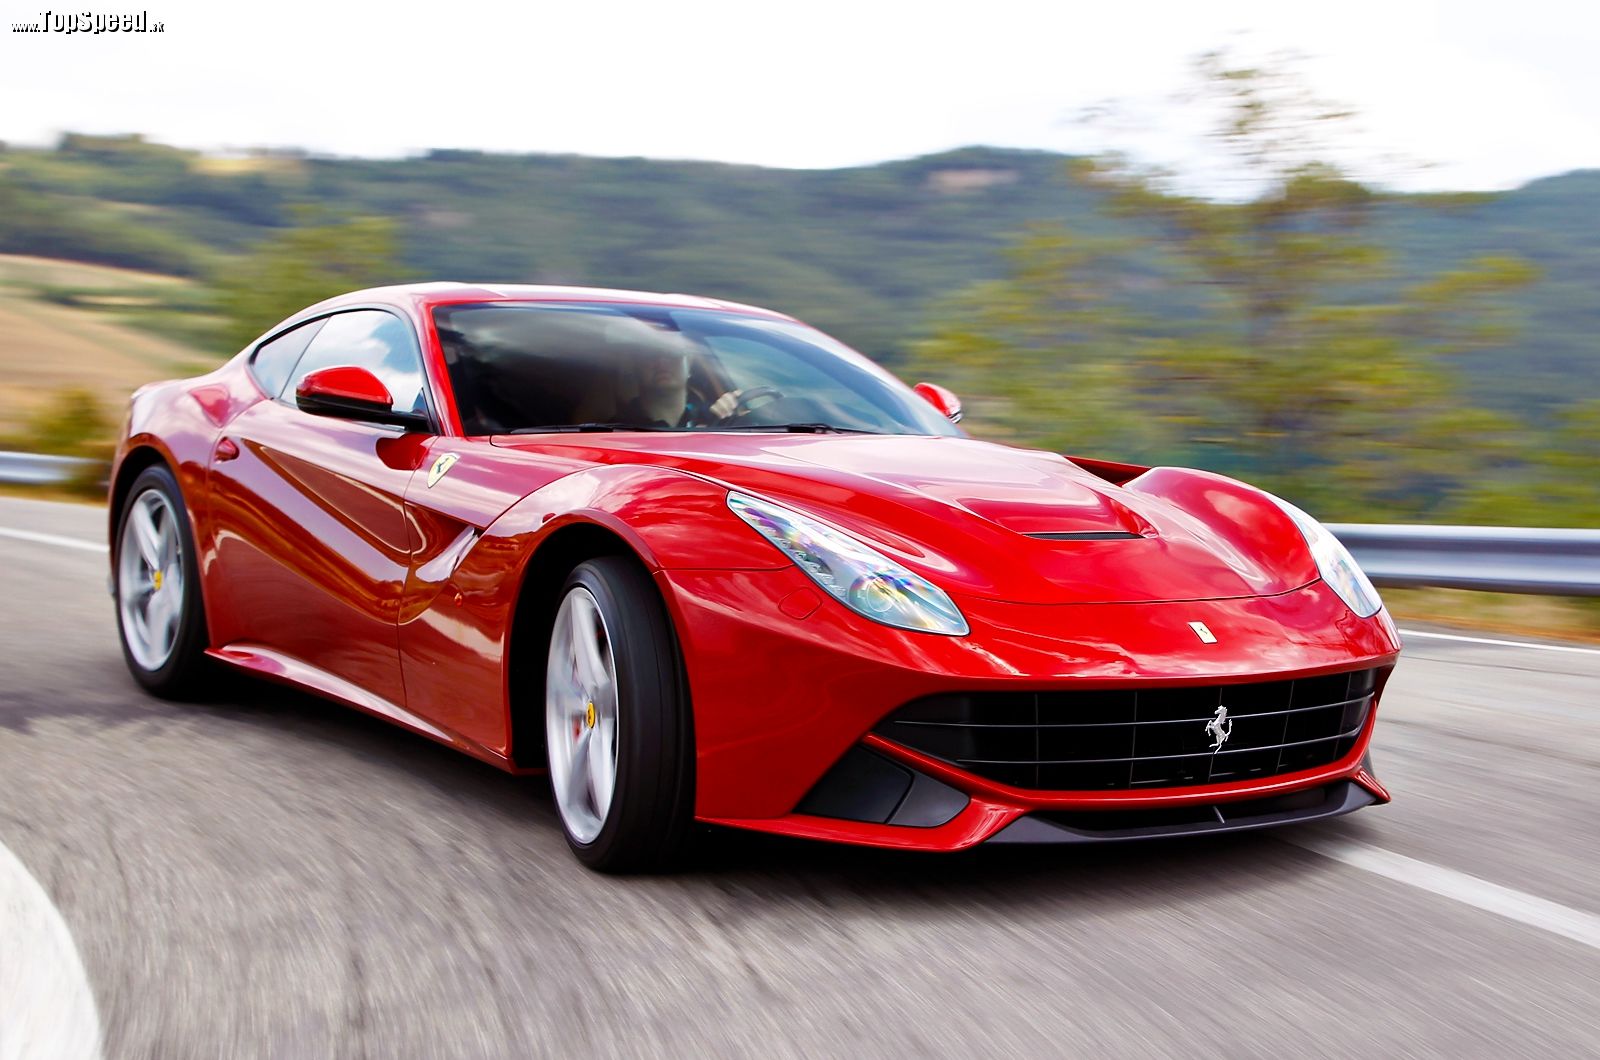 Niektoré automobilky budú mať s novými pravidlami problém. Čo bude so zvukom Ferrari alebo Lamborghini?